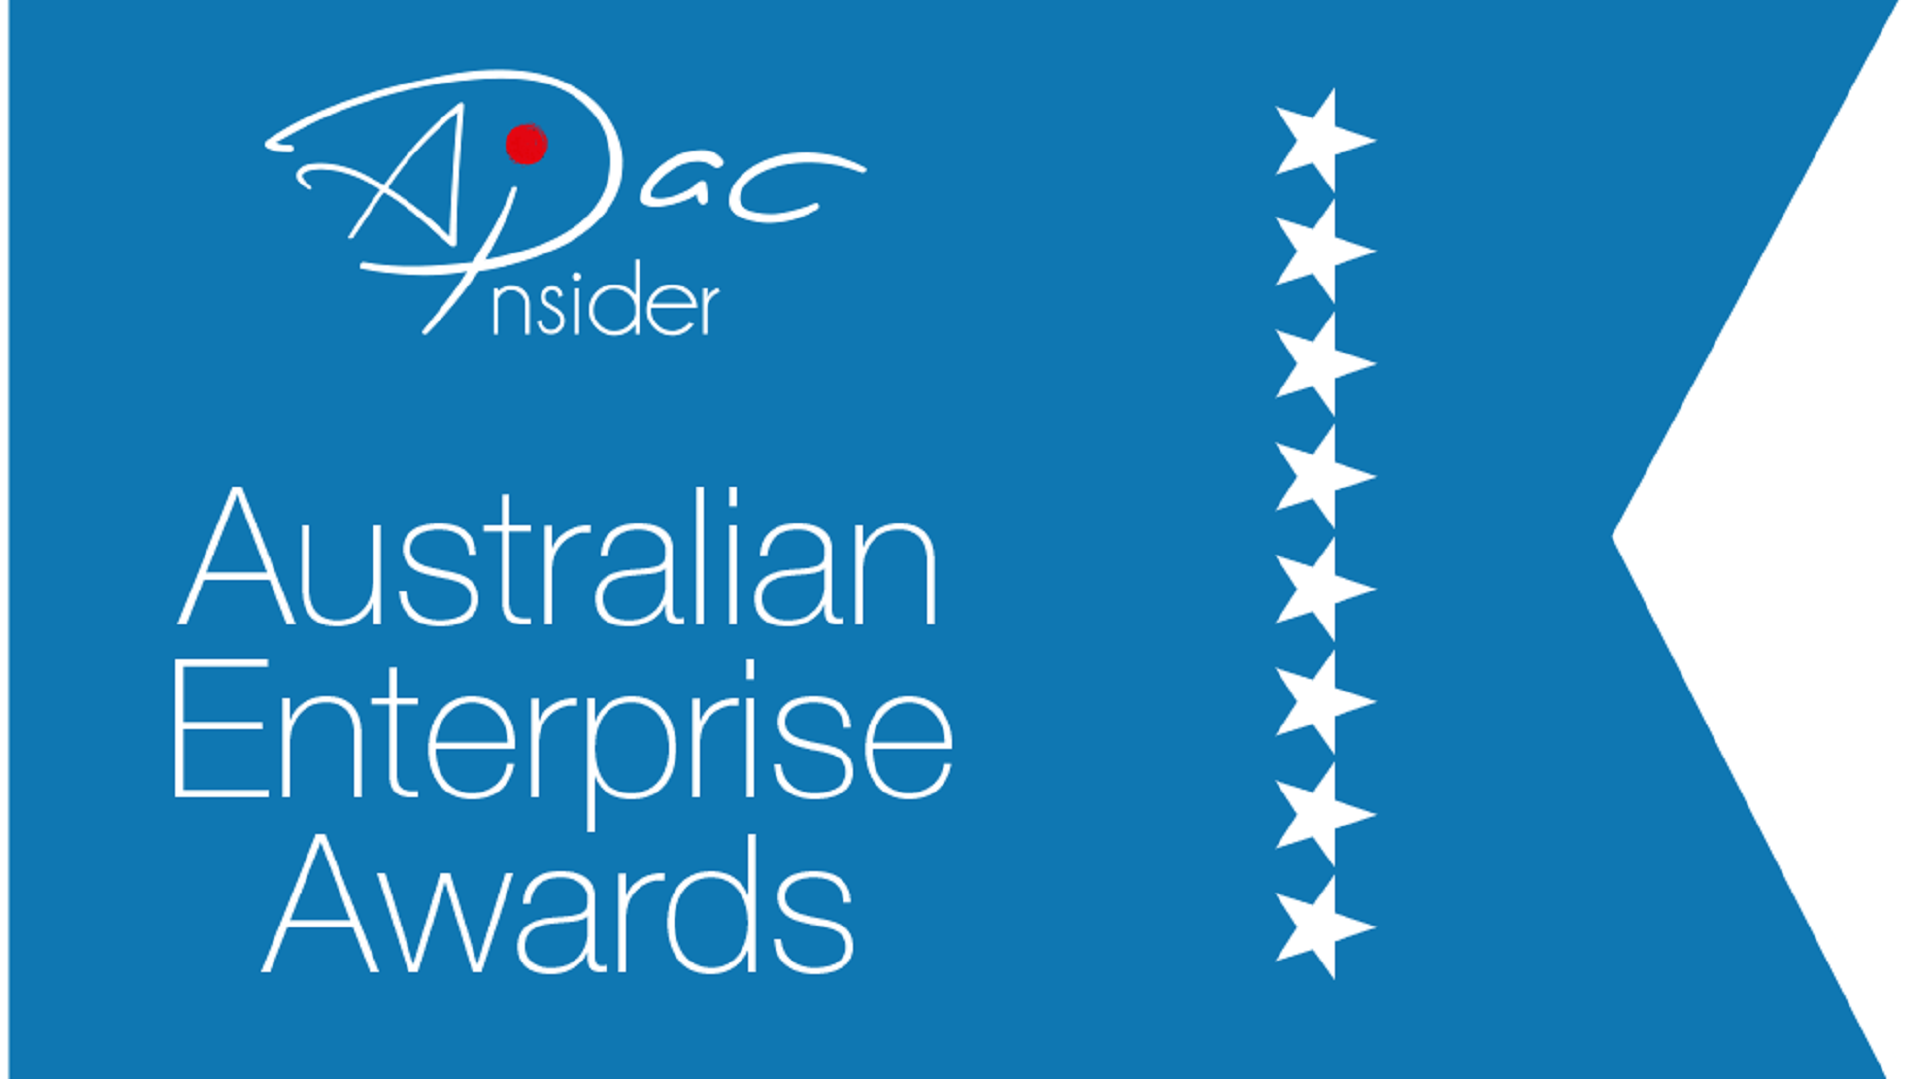 APAC Insider Aus Enterprise Awards